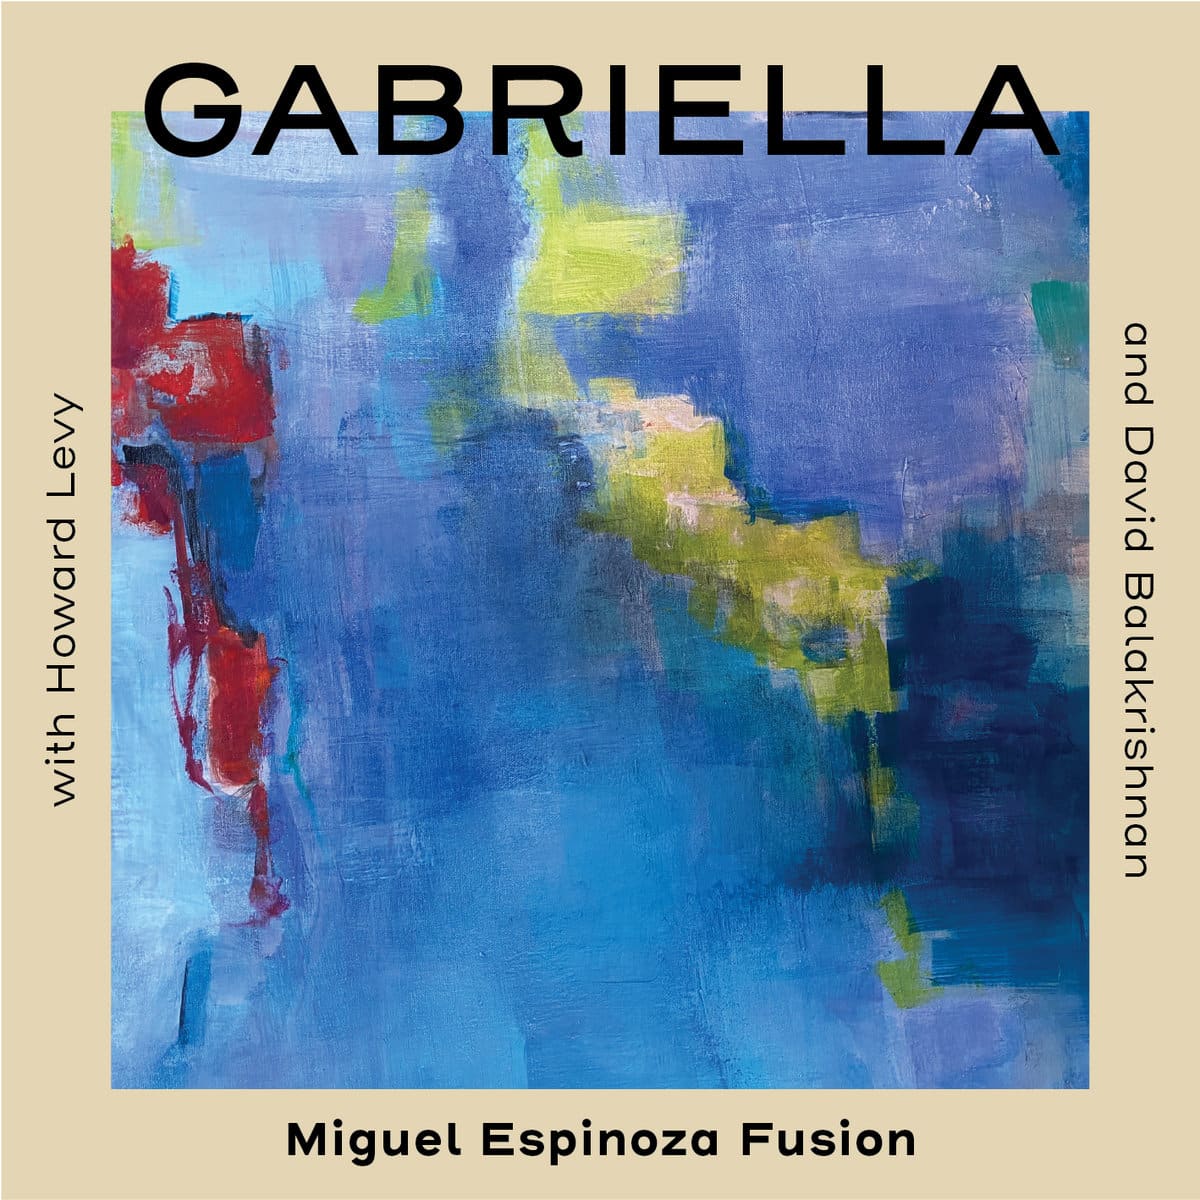 Miguel Espinoza Fusion – Gabriella